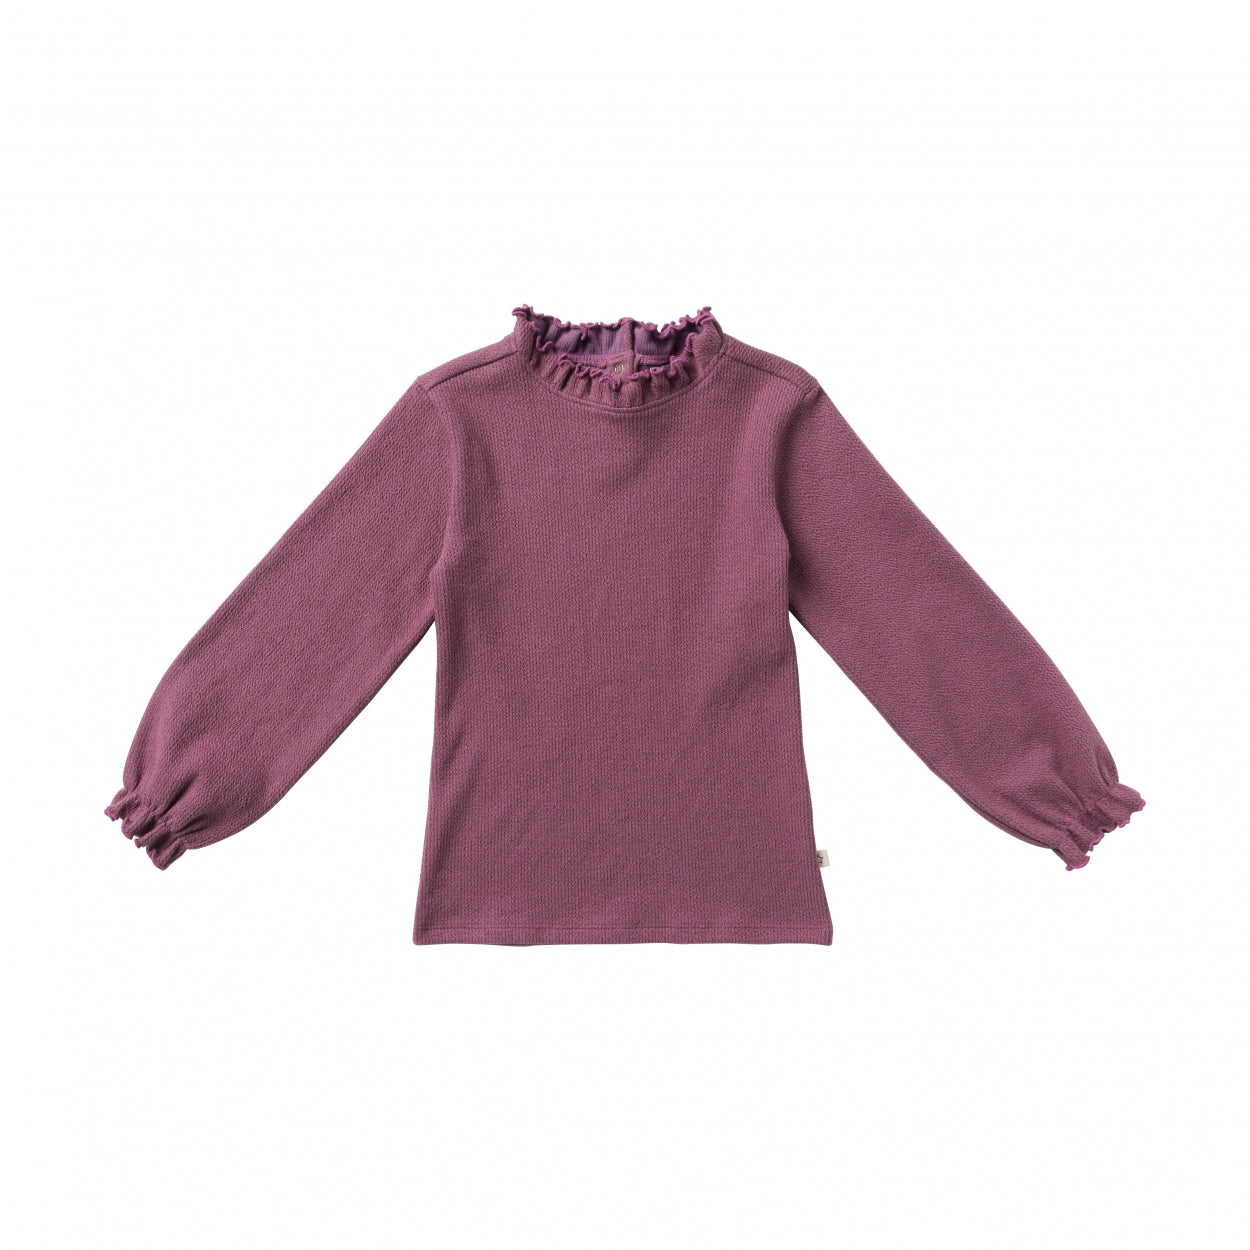 Meisjes Shirt Chain | Gracie van Your Wishes in de kleur Fuchsia in maat 122-128.